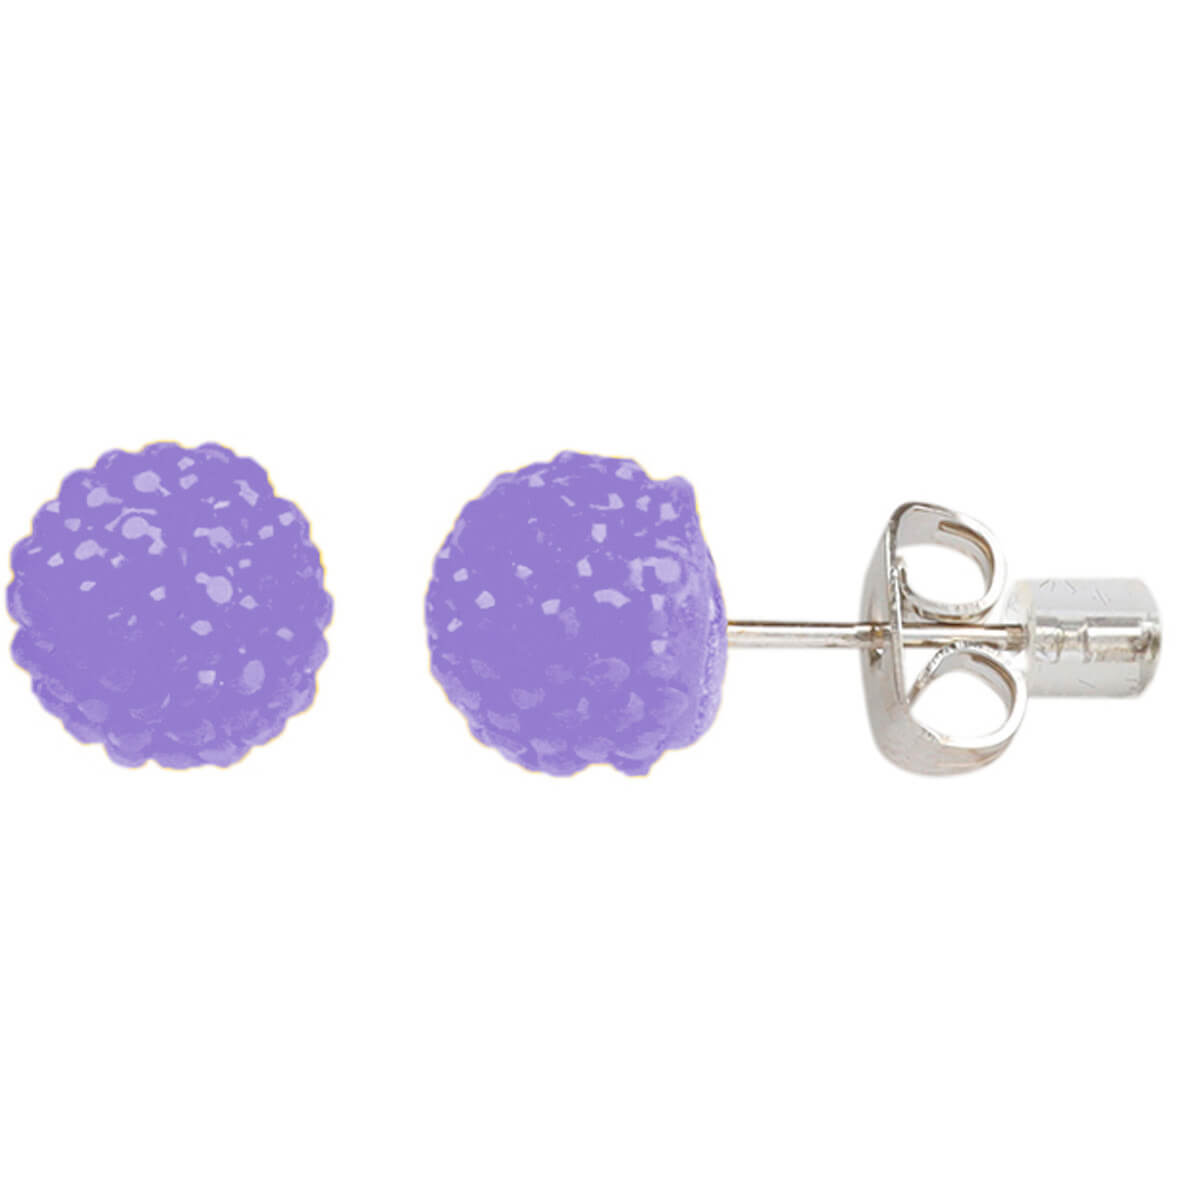 Shiny ball earrings 8mm